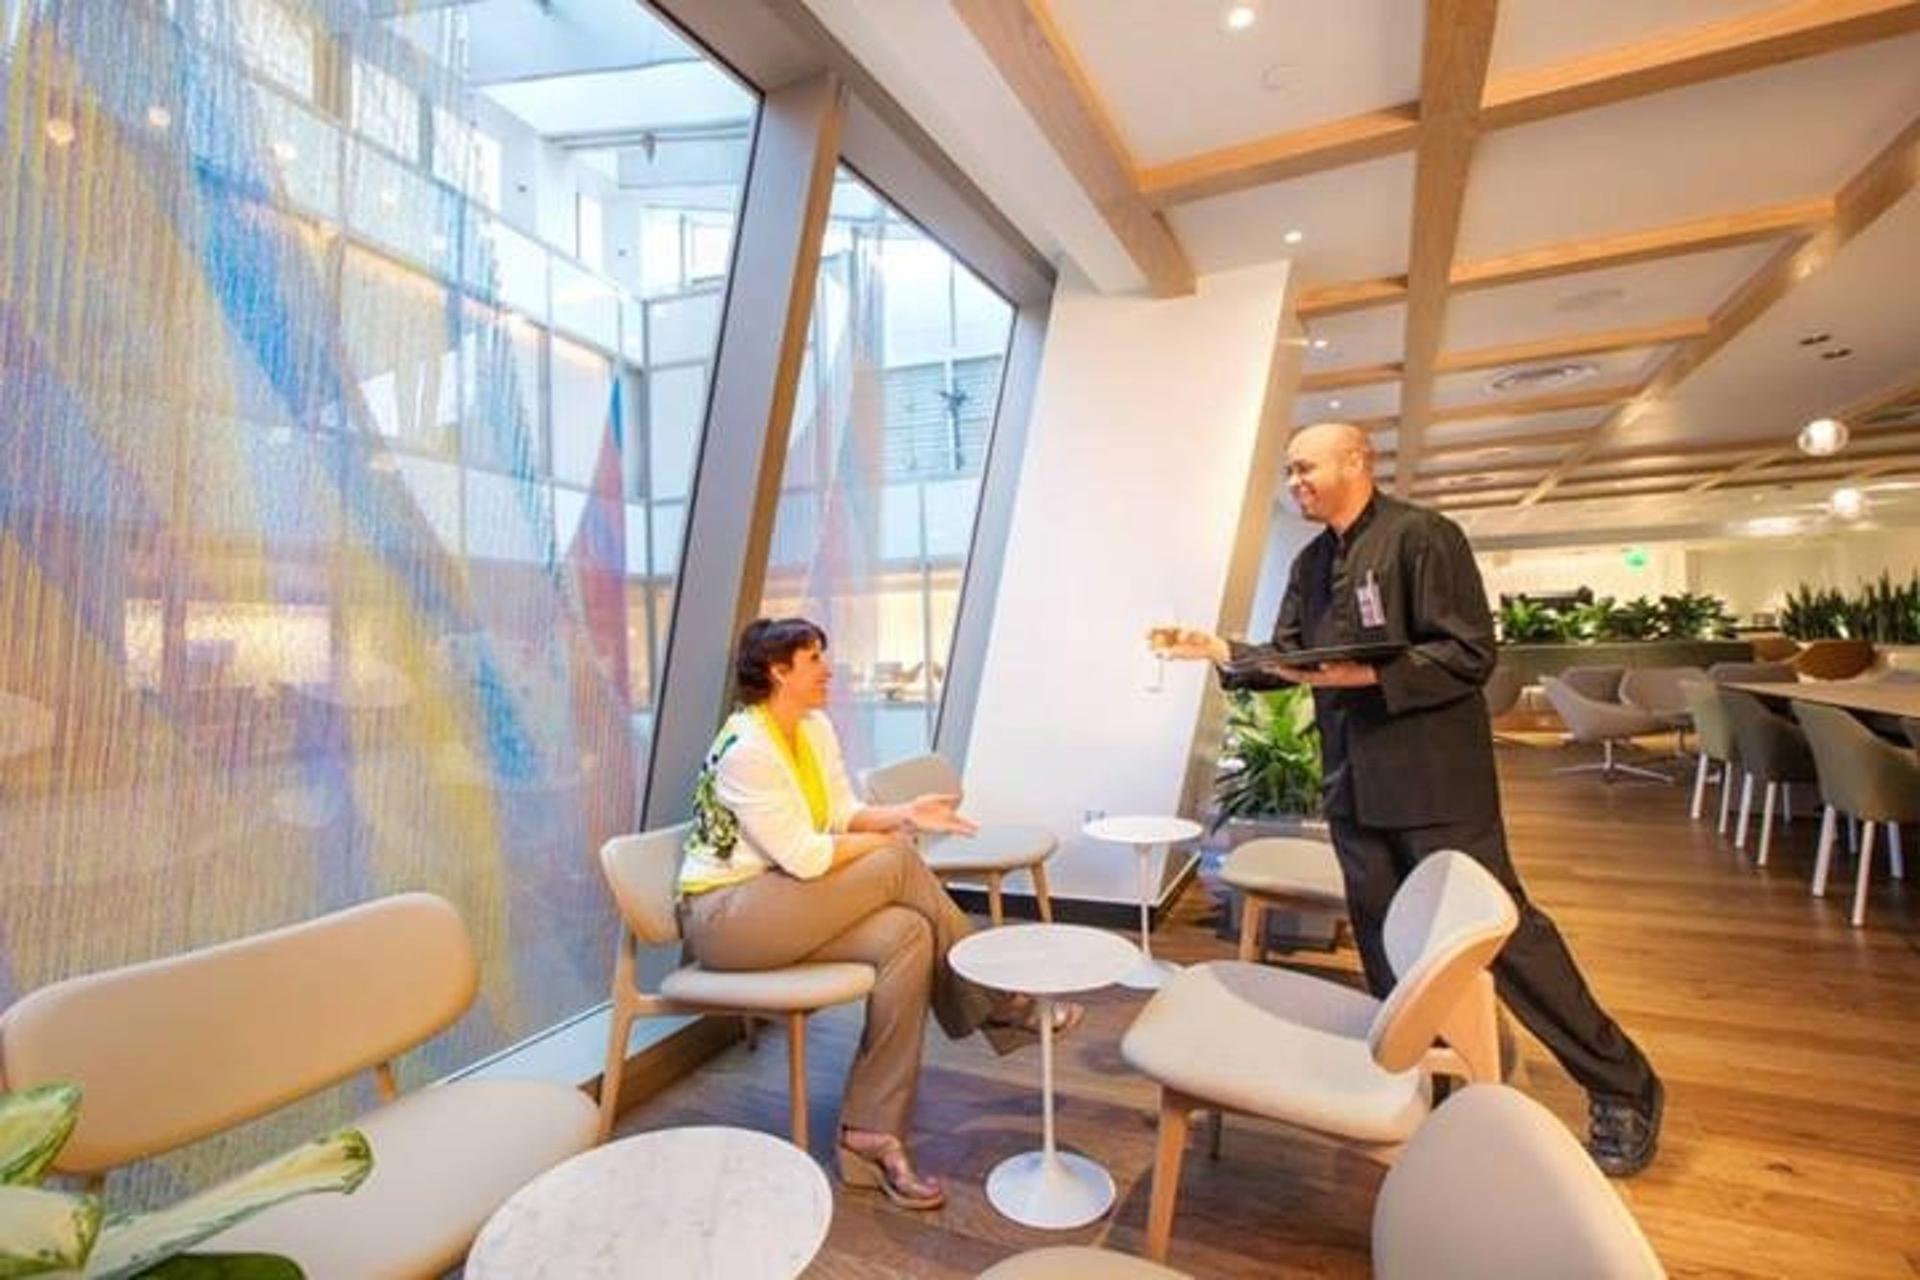 oneworld International Business Lounge image 4 of 21